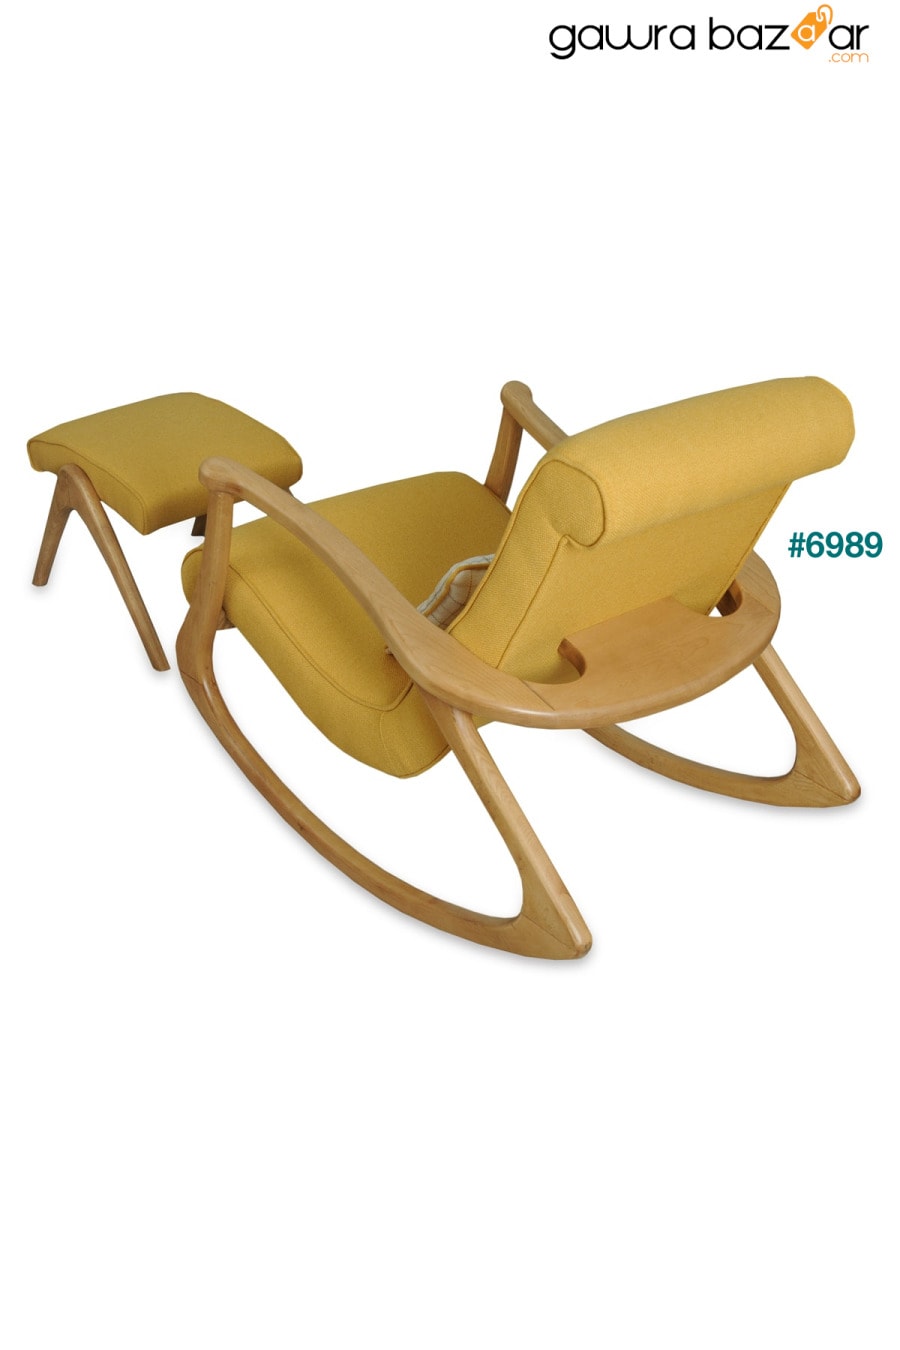 كرسي هزاز خشبي أصفر طبيعي من Ekol يستريح للرضاعة الطبيعية للأب والقراءة على التلفاز كرسي مستلق Bergere Asedia 6